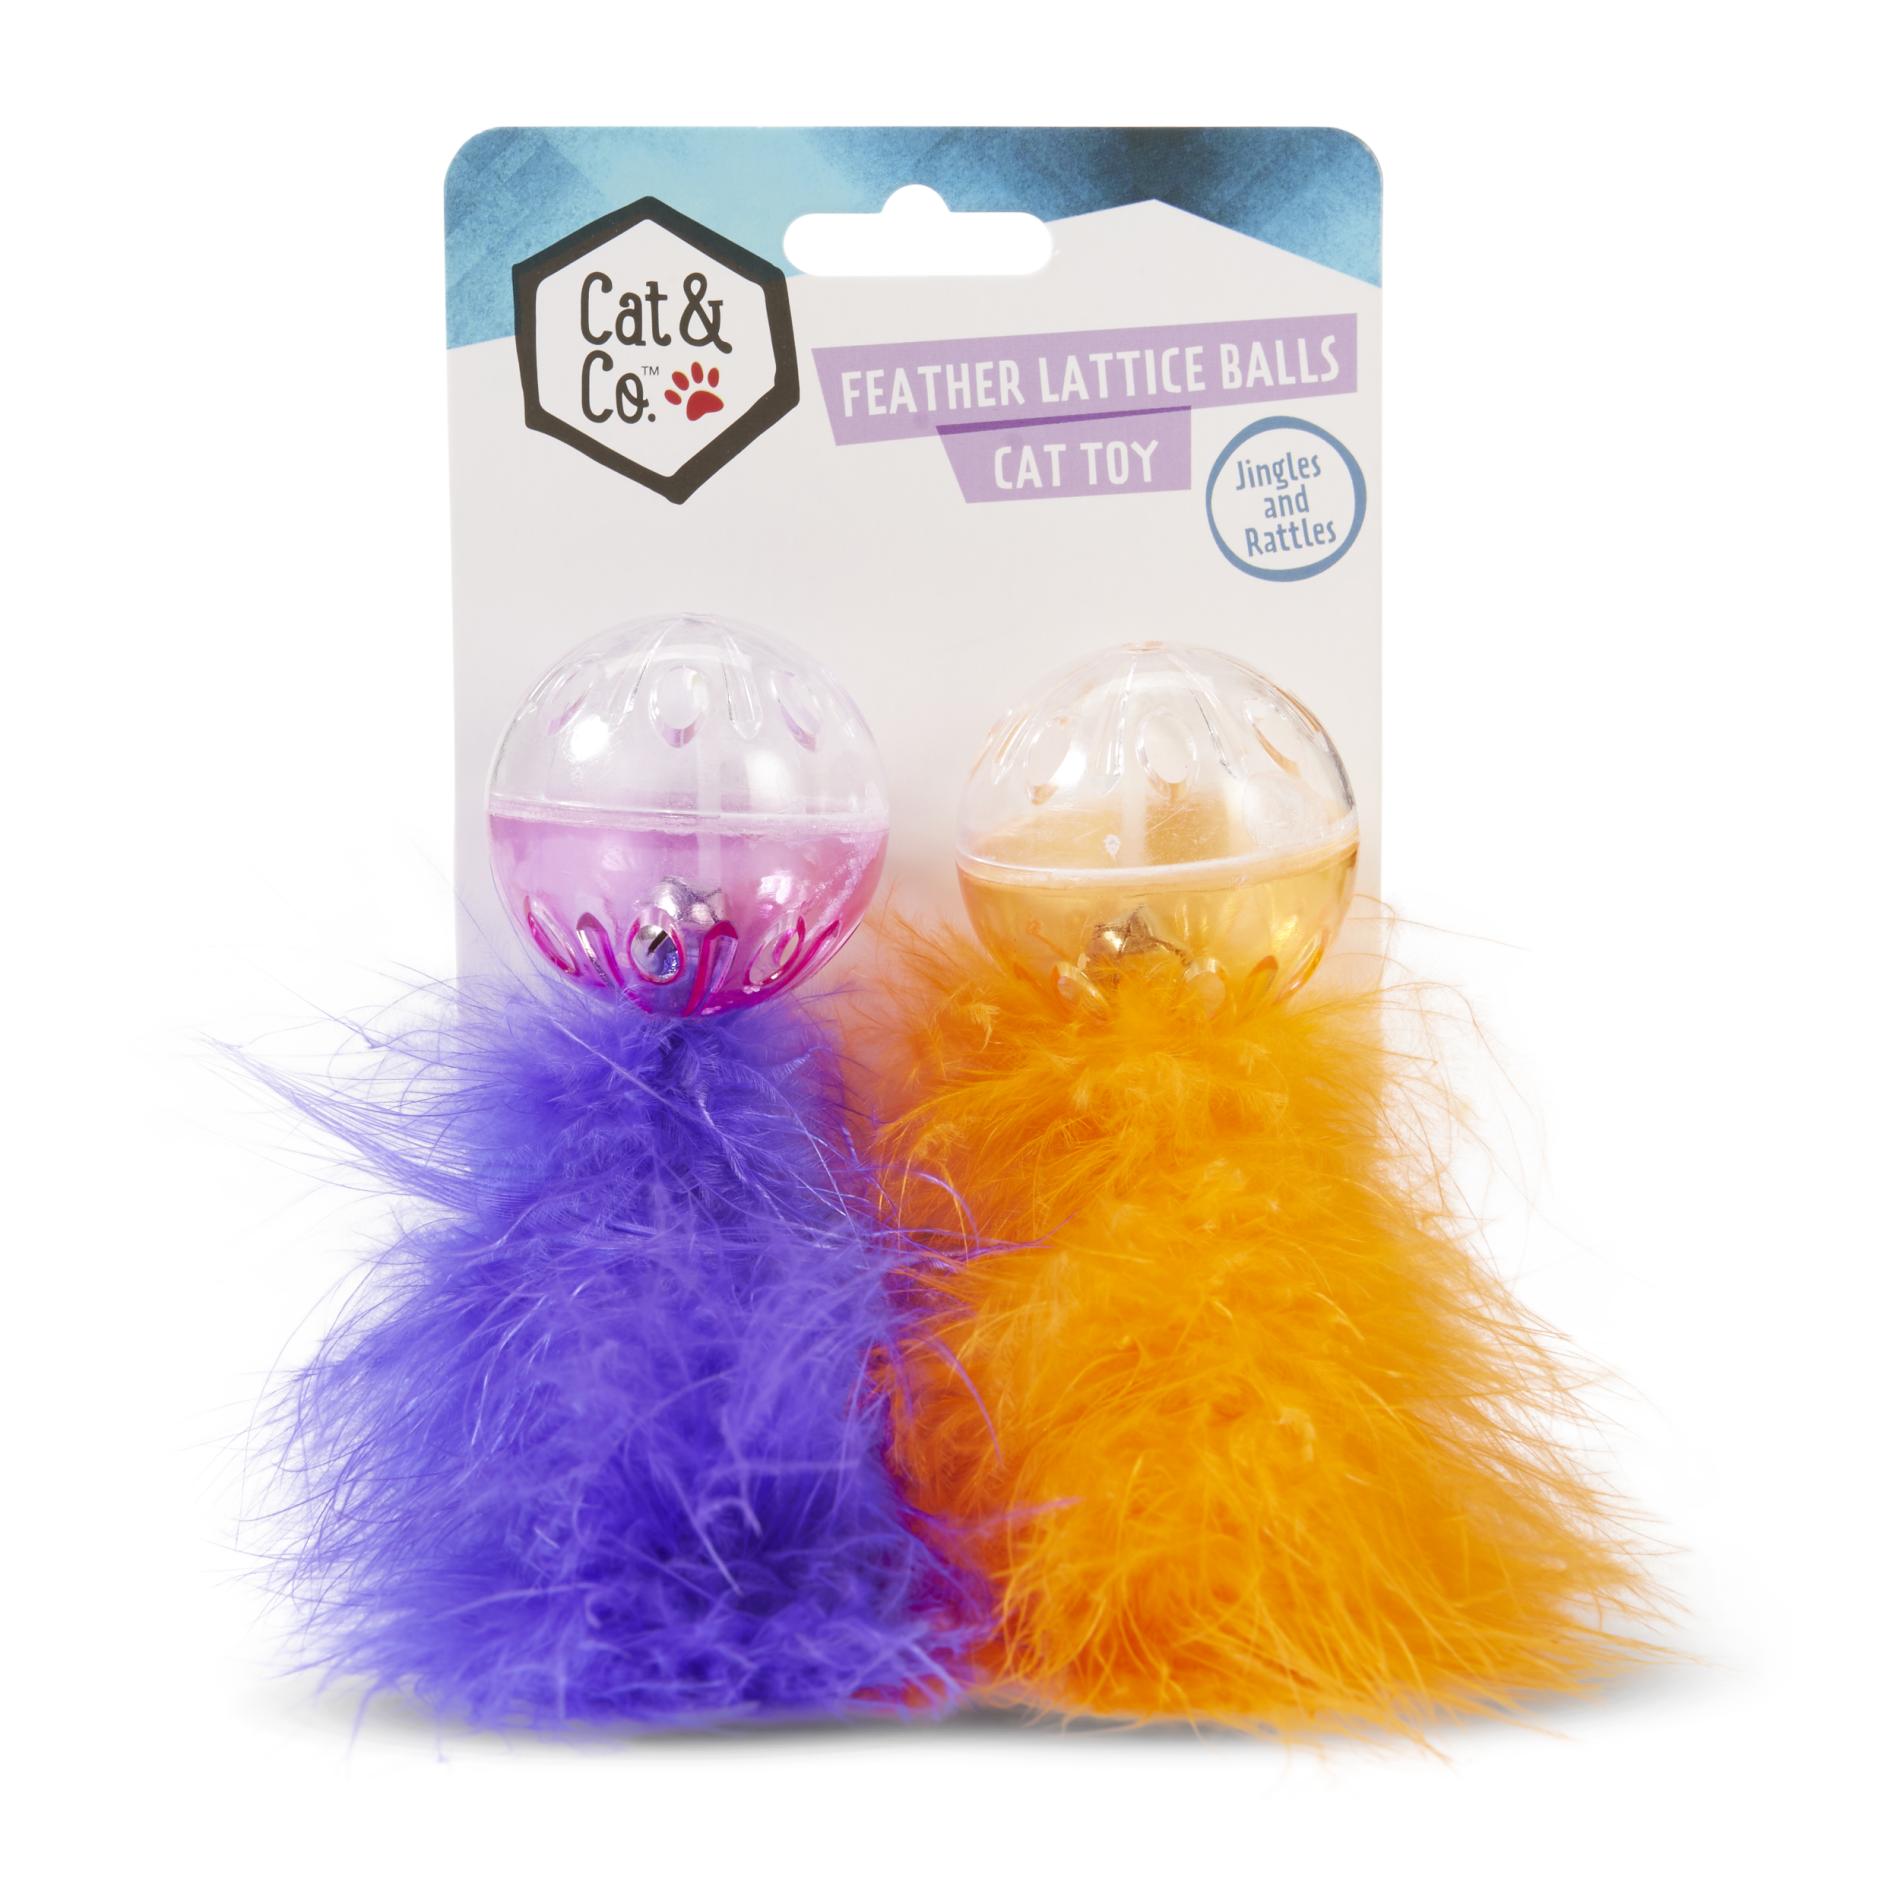 Cat & Co. 2-Pack Feather Lattice Balls Cat Toys